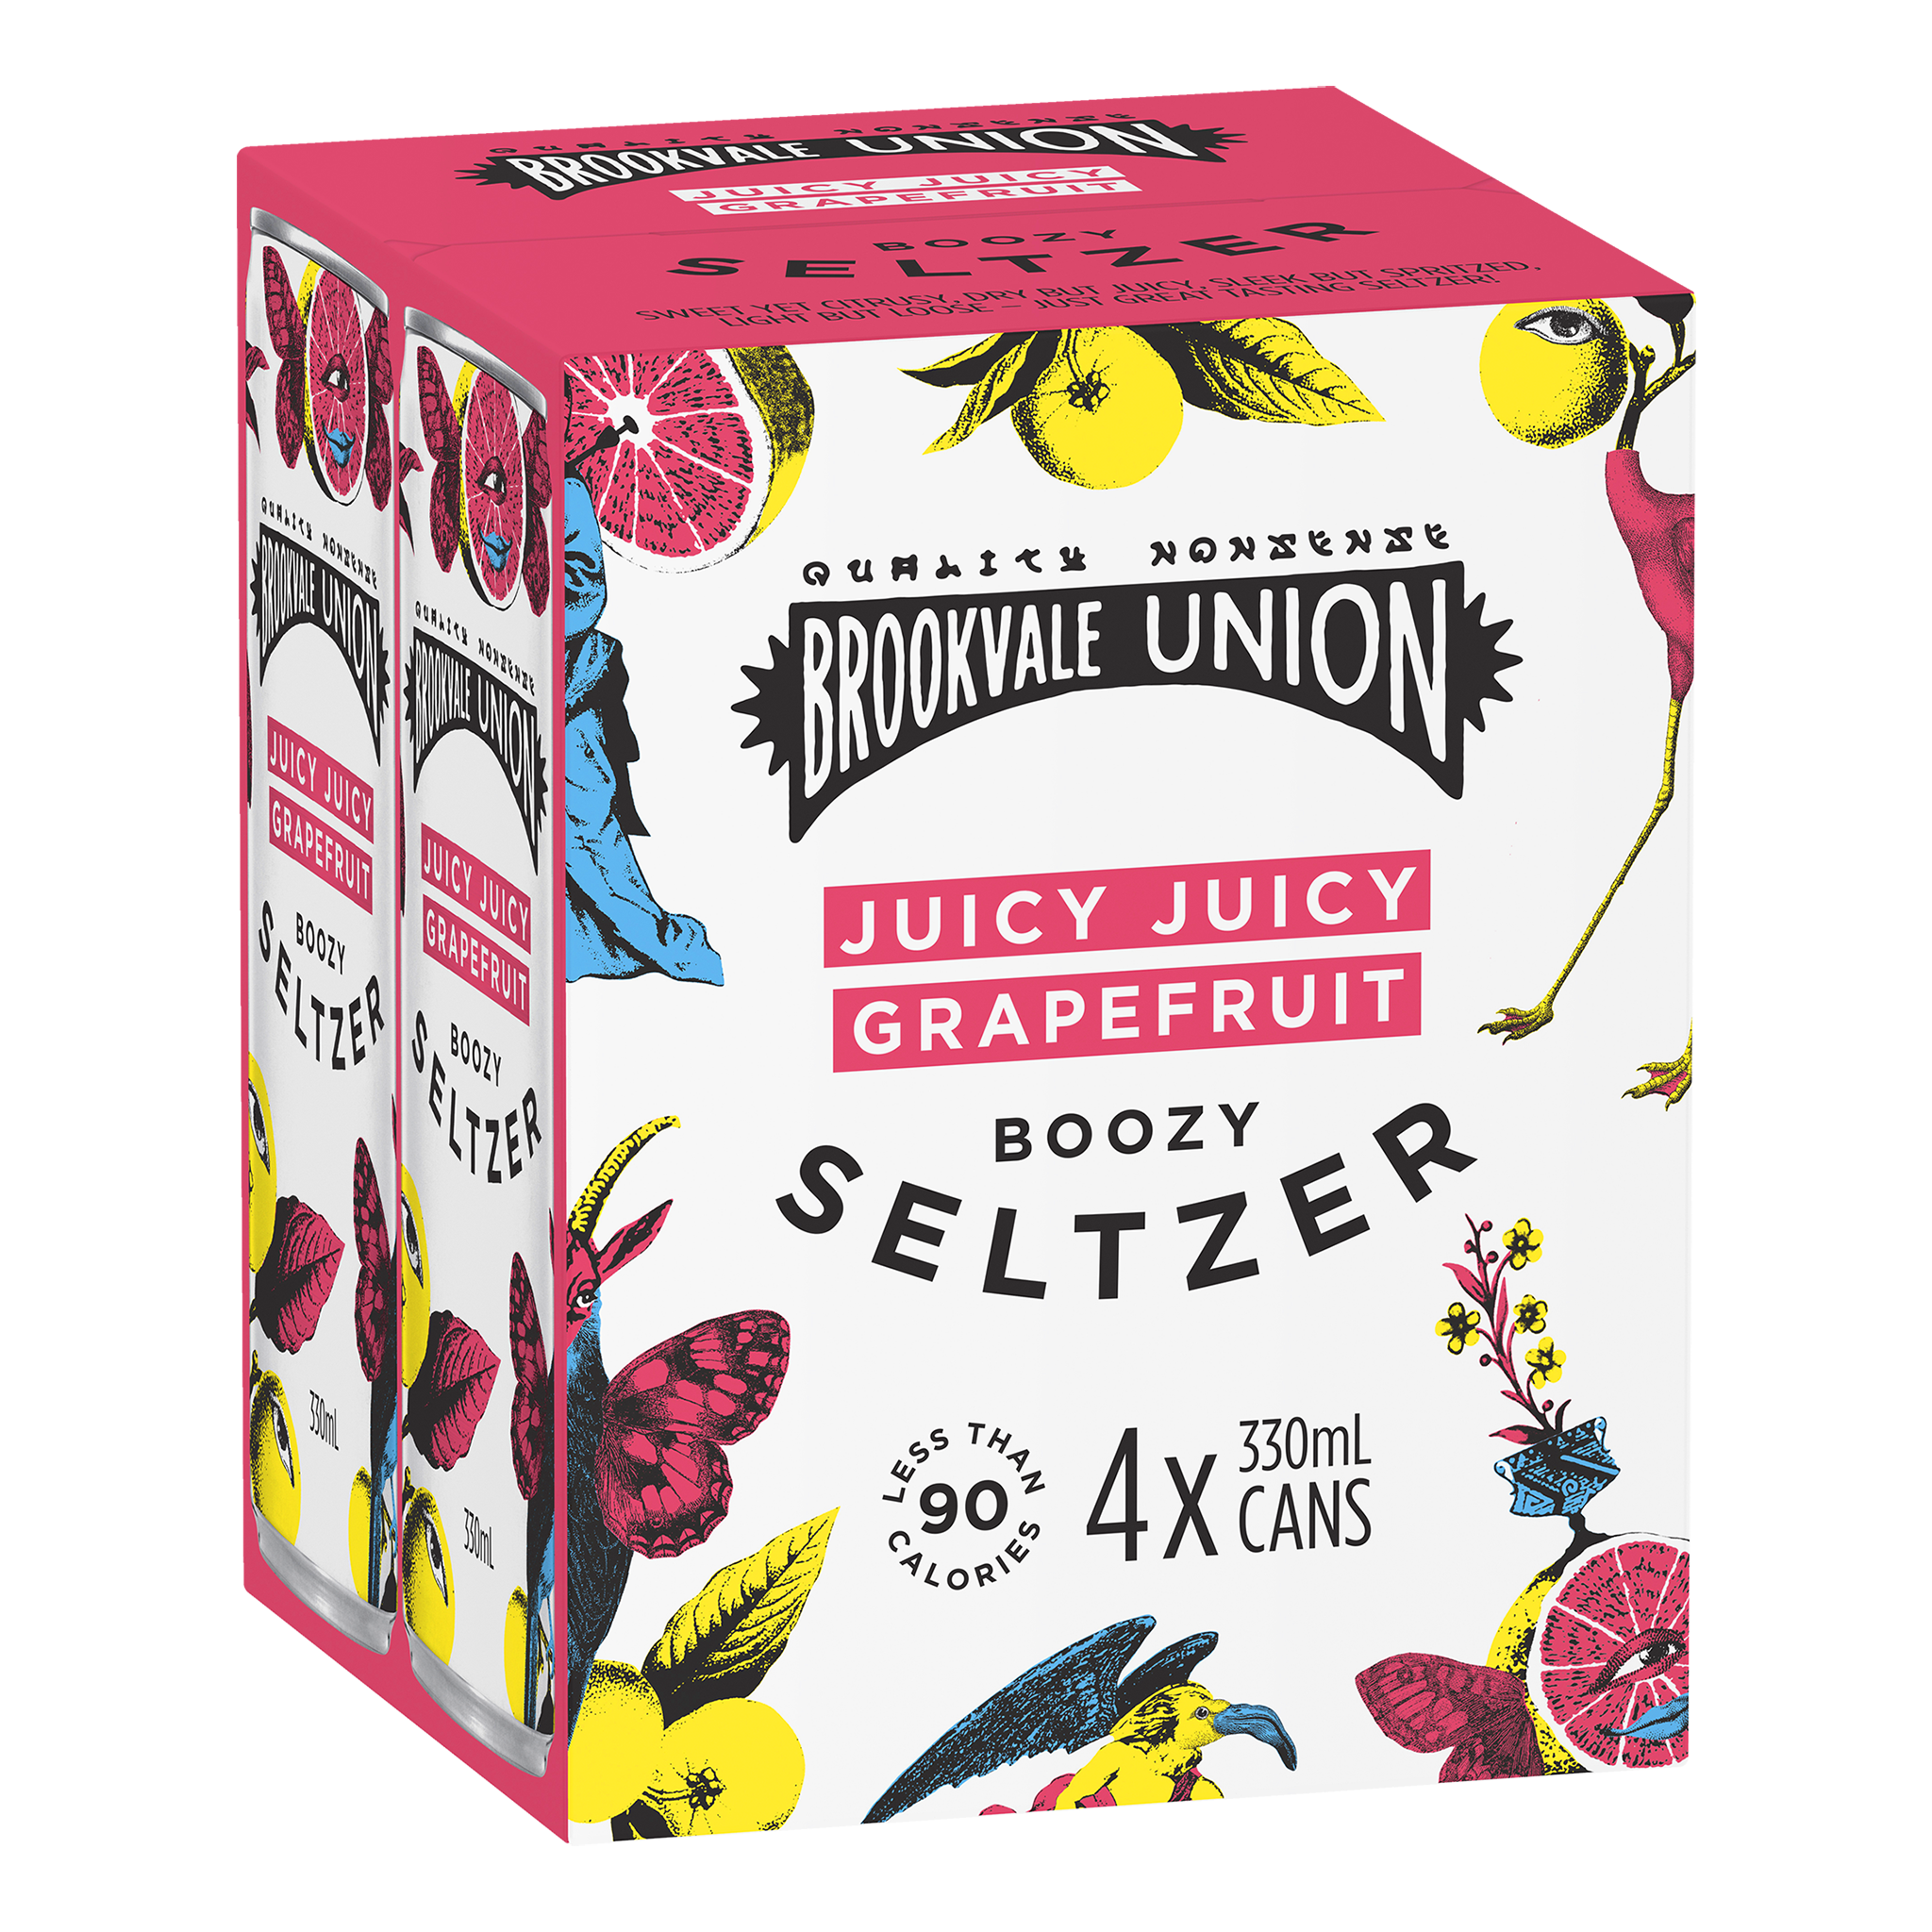 Brookvale Union Juicy Juicy Grapefruit Boozy Seltzer (Case)